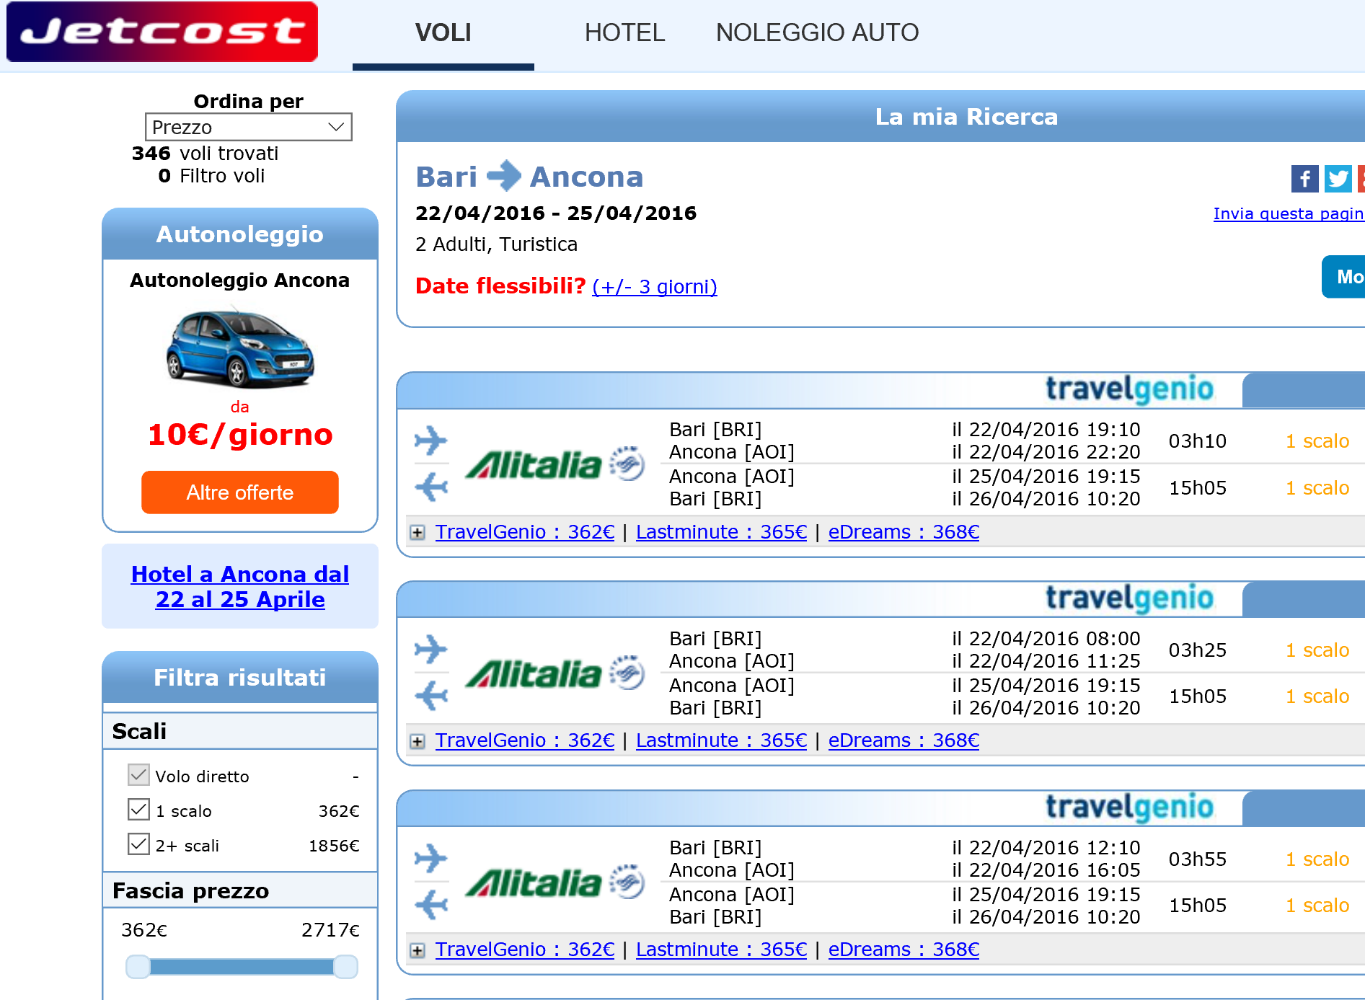 Esame della possibilità di viaggio aereo Con il motore di ricerca trovo un agenzia on-line Jetcost che offre voli low-cost (economici) per numerose destinazioni, fra cui anche da Bari ad Ancona.